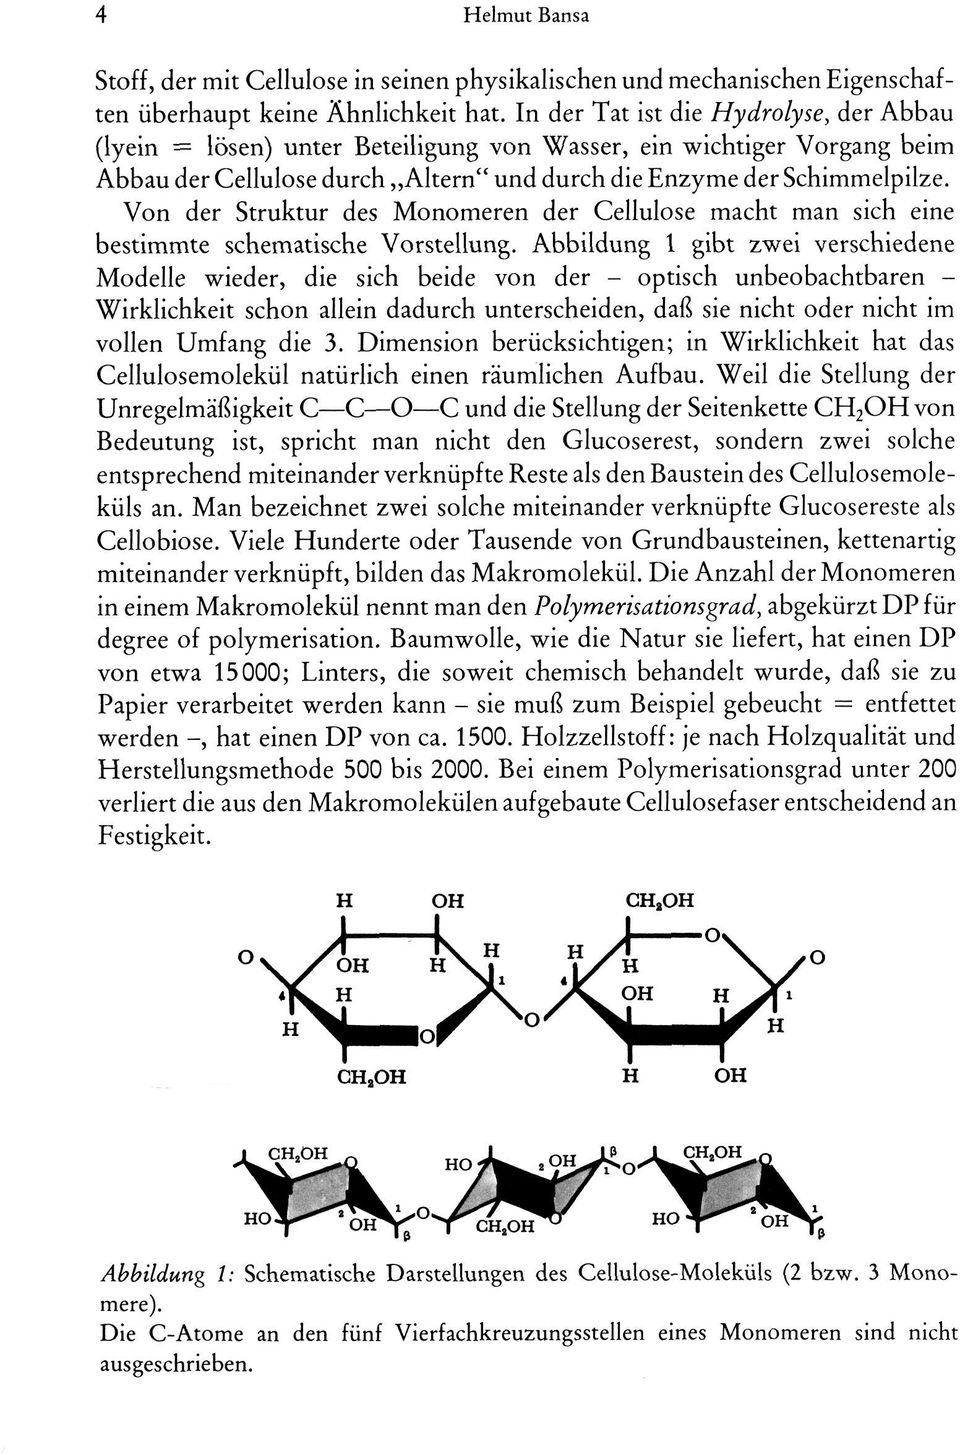 Von der Struktur des Monomeren der Cellulose macht man sich eine bestimmte schematische Vorstellung.